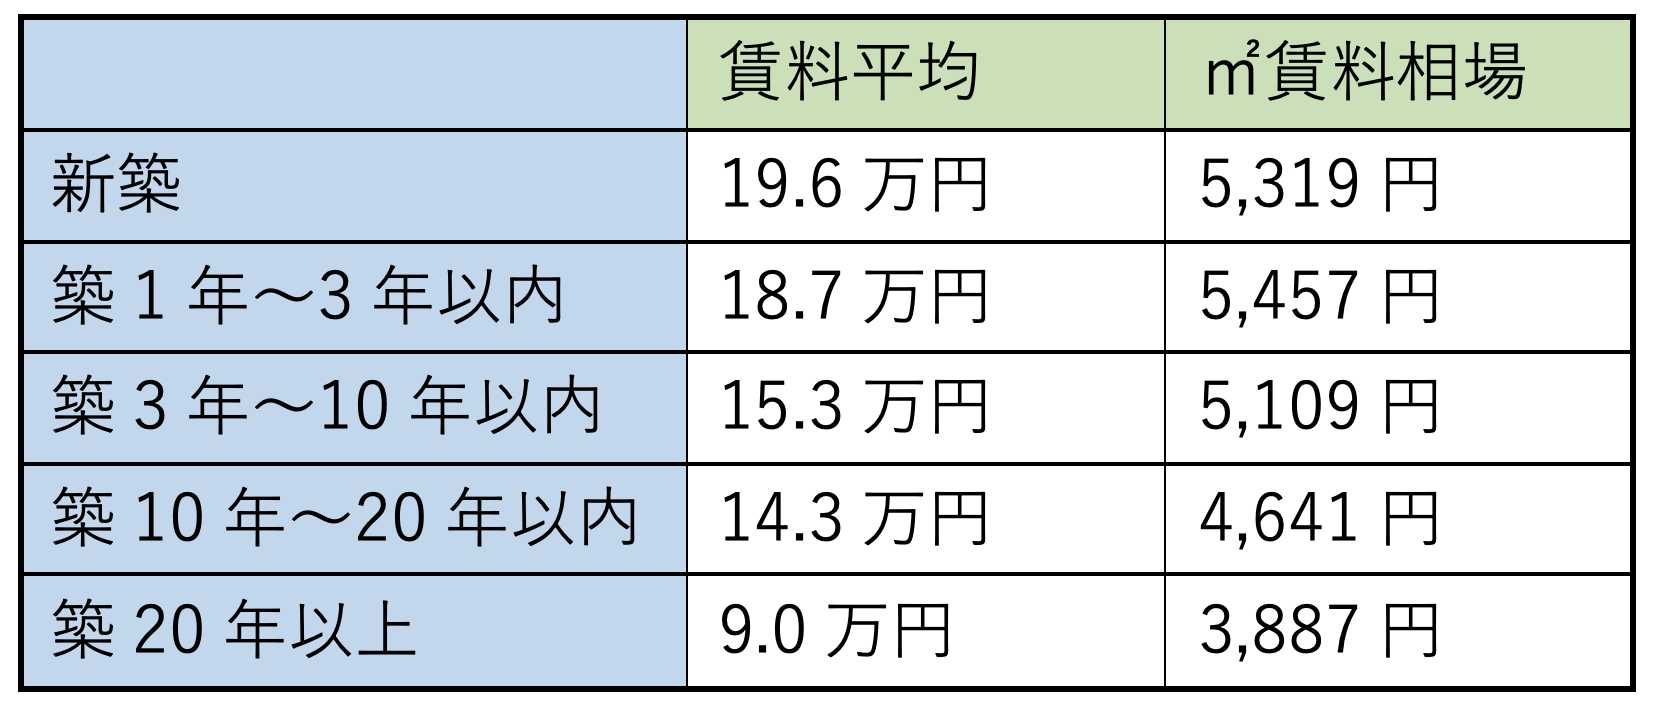 新宿区のスーモ掲載物件の築年別賃料平均と㎡単価(2021年9月22日プリンシプル住まい総研調べ)